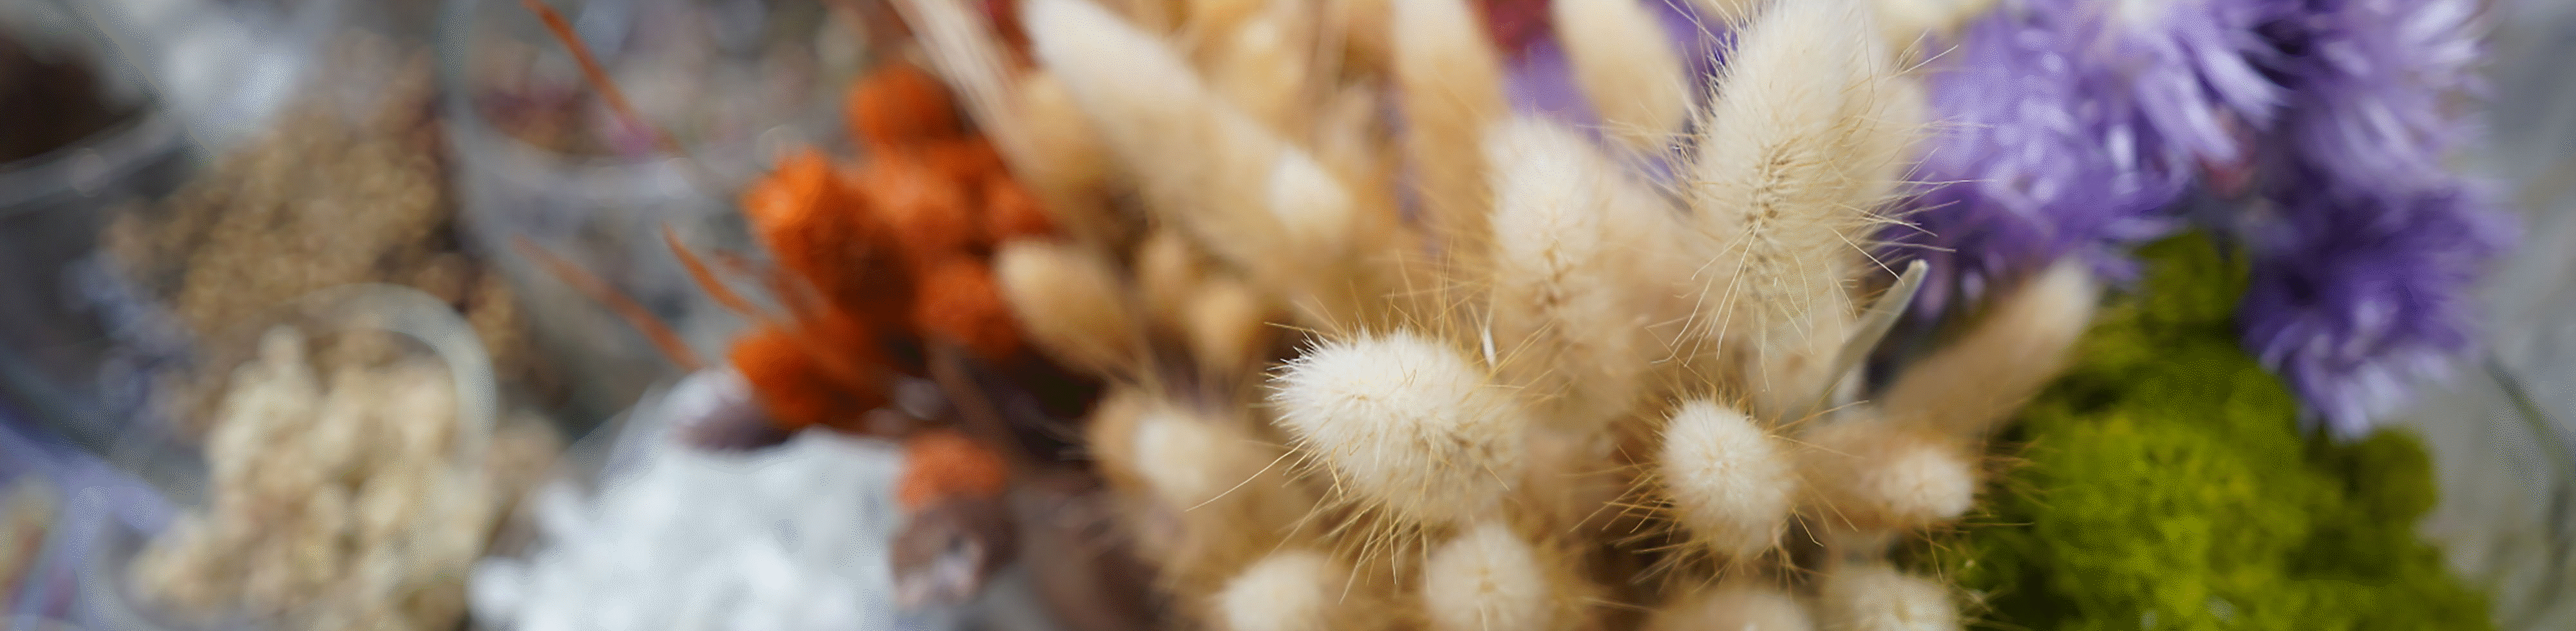 لقطة مقرّبة لباقات تضم عشبًا خشنًا وأنواعًا أخرى من الزهور